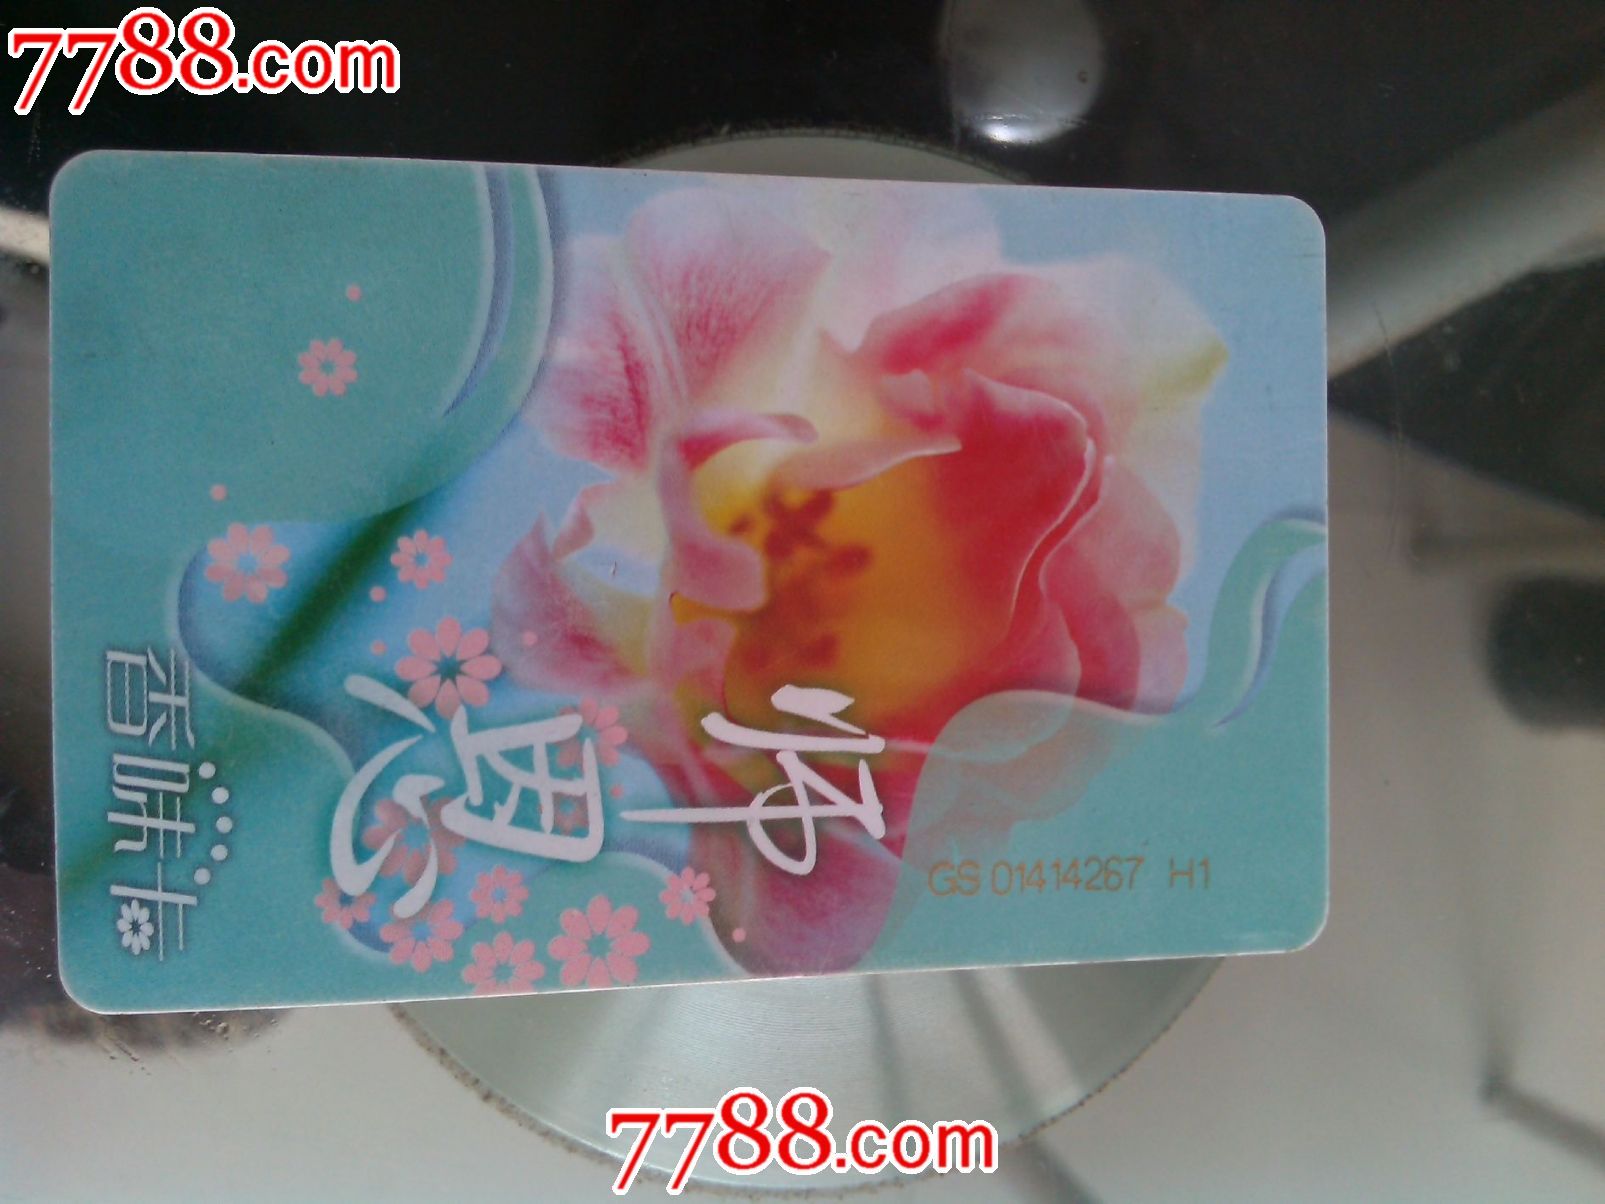 师恩卡-价格:6元-se21546293-电话IC卡-零售